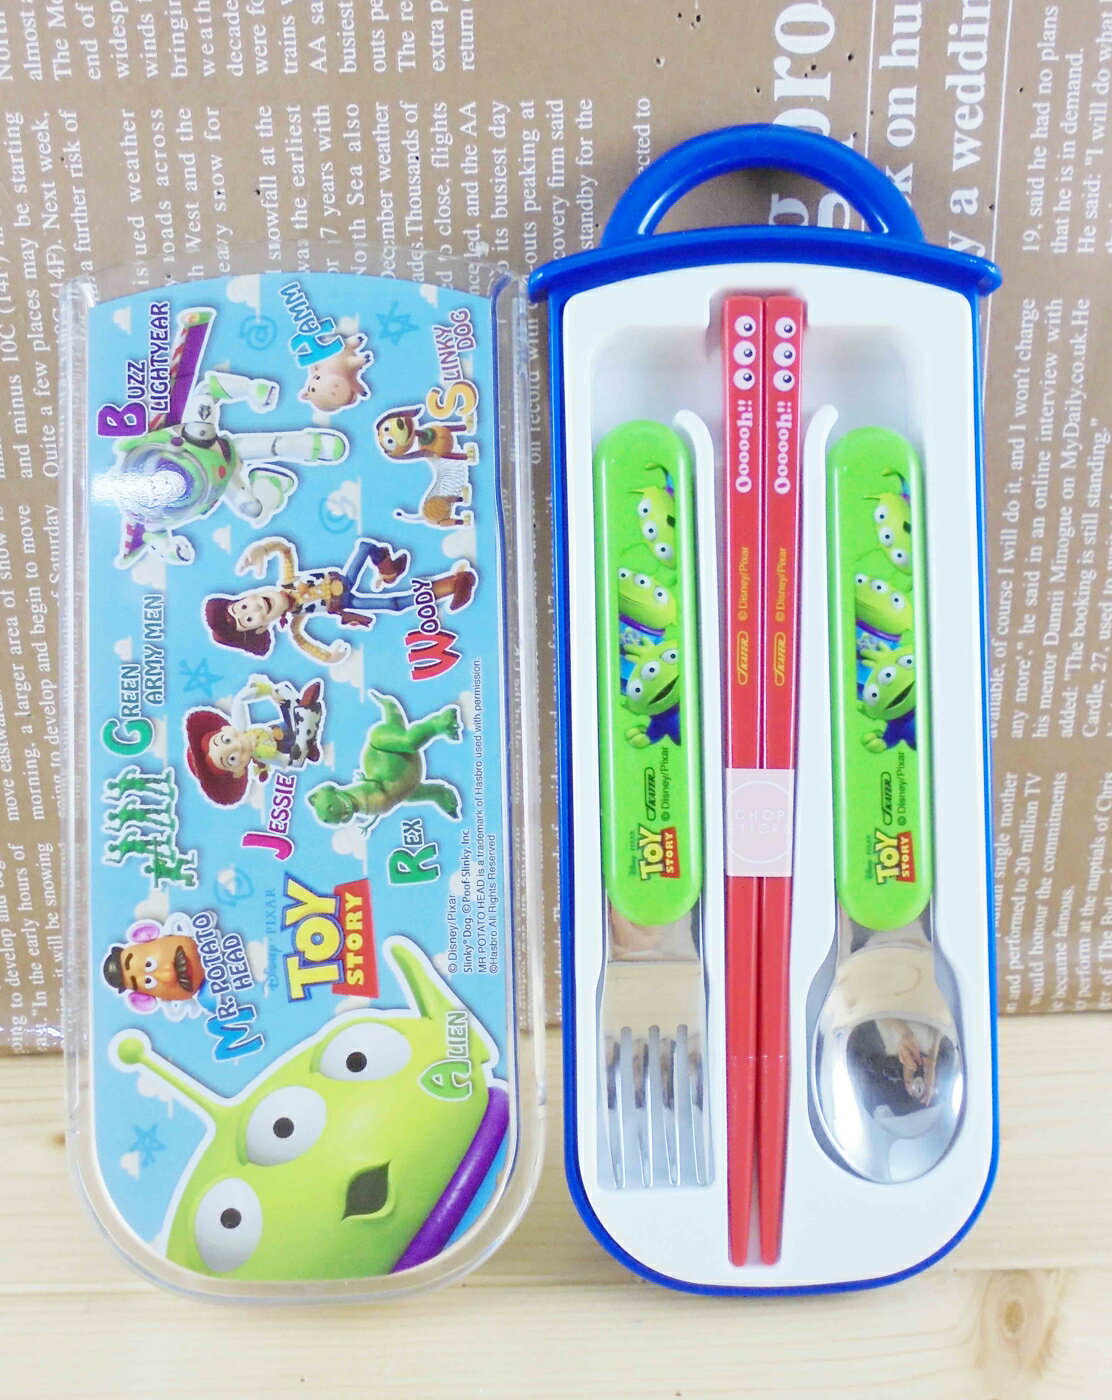 【震撼精品百貨】Metacolle 玩具總動員-便當盒-餐具組 震撼日式精品百貨